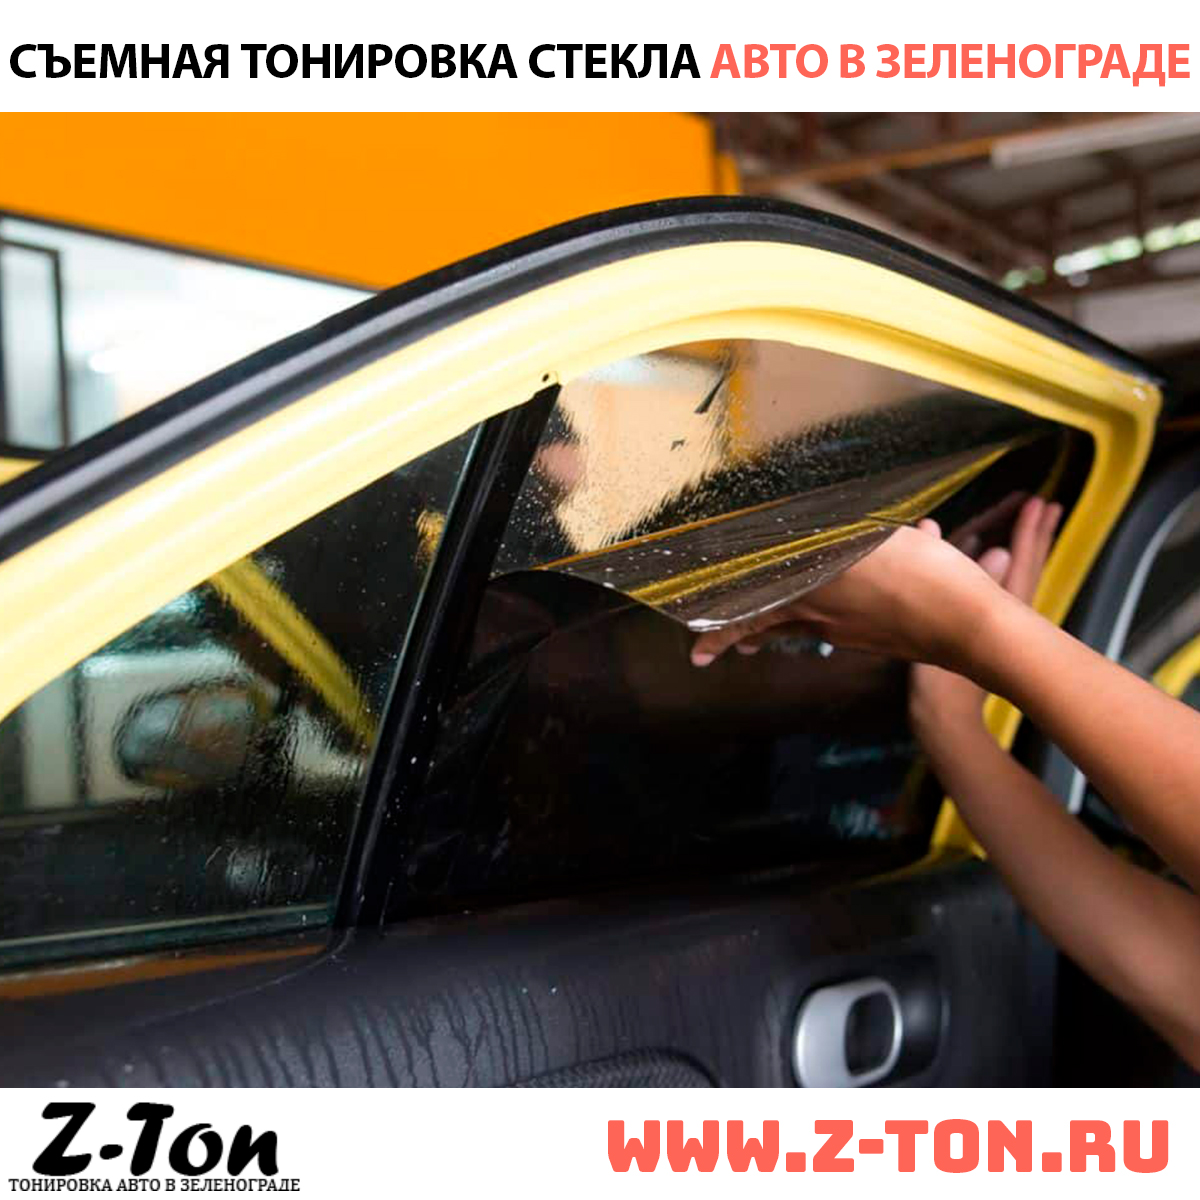 Съемная тонировка авто в Зеленограде (Андреевка, Крюково, Москва)